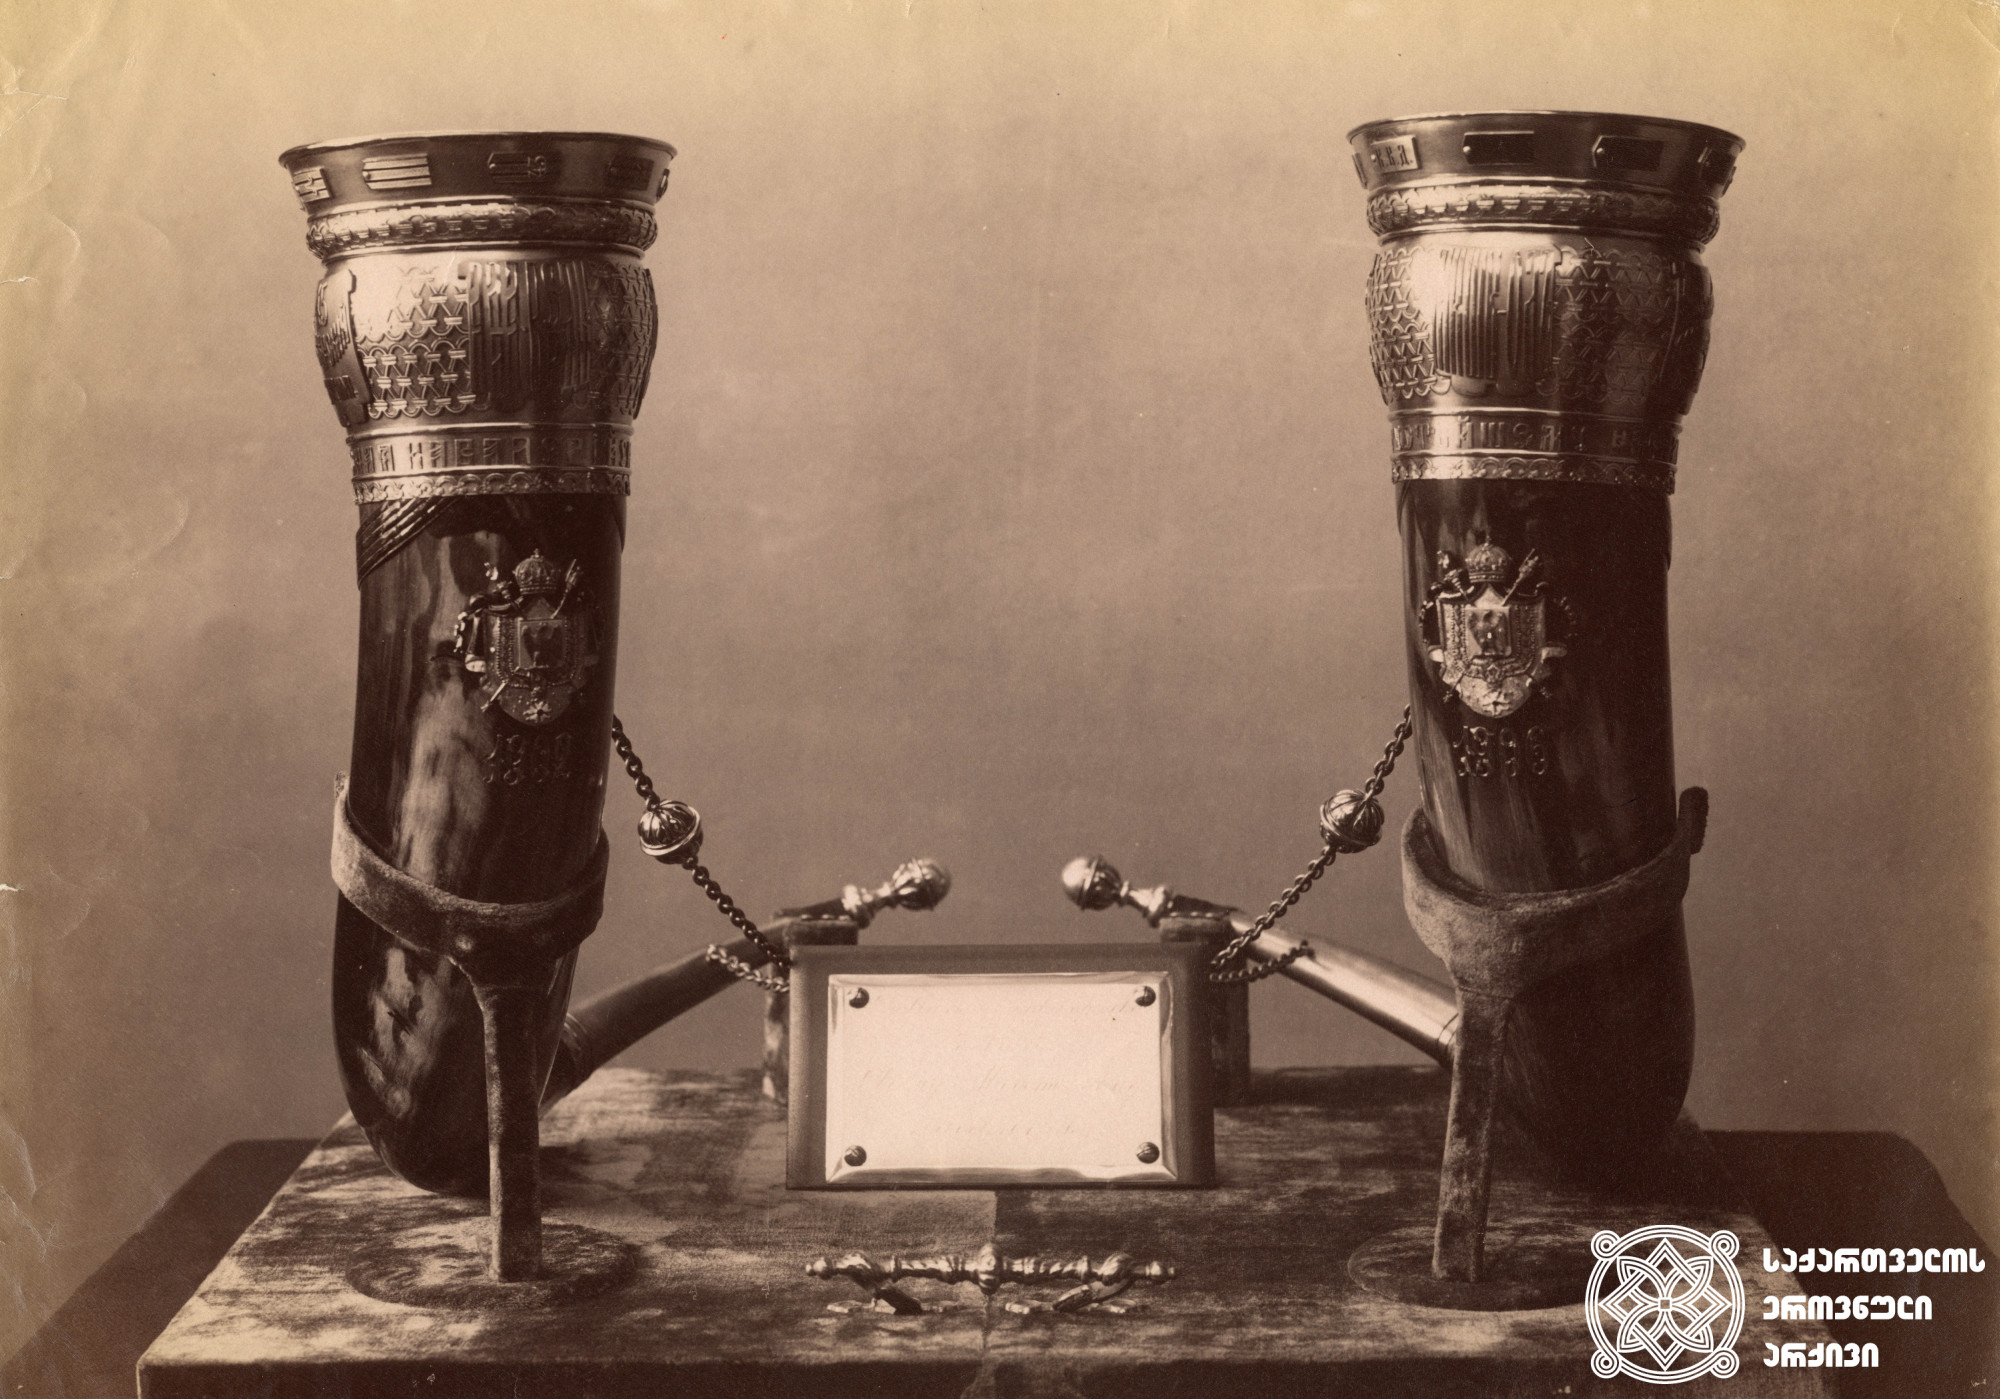 ვერცხლით მოჭედილი ყანწები
<br>
ფოტო: დიმიტრი ერმაკოვი  <br>
[1870-1910]  <br>
Horns decorated with silver frames <br>
Photo: Dmitry Ermakov  <br>
[1870-1910]